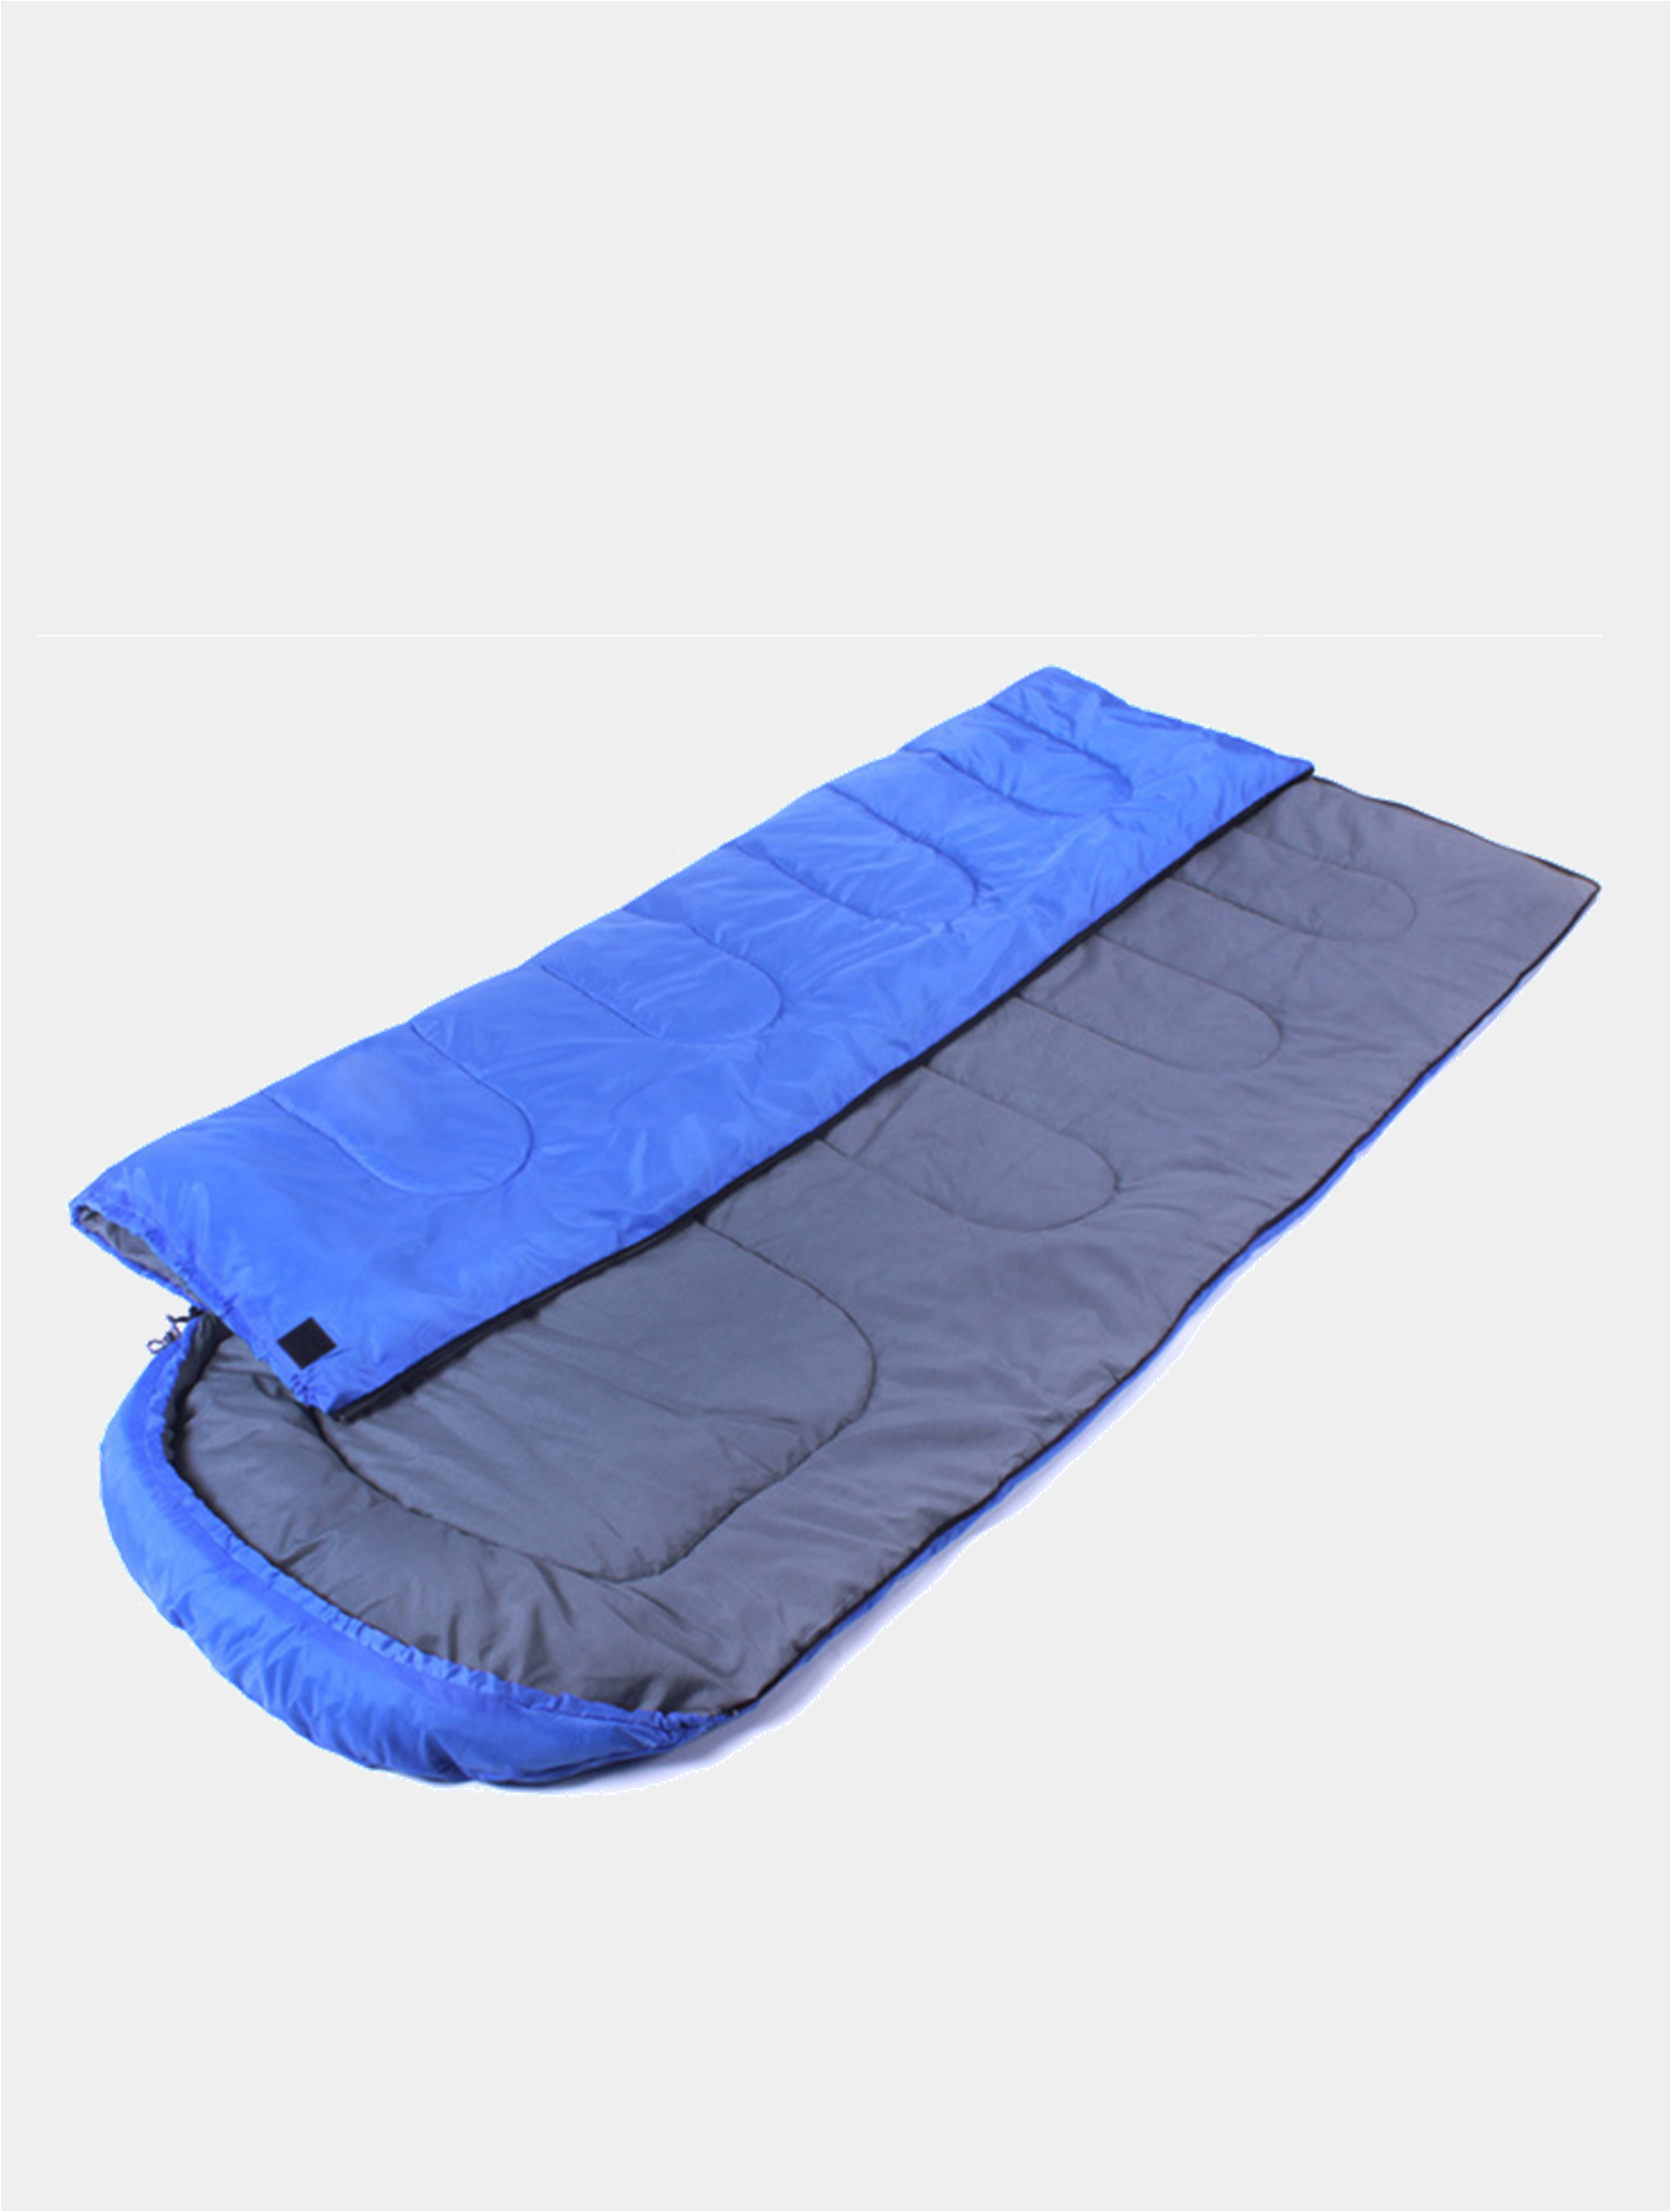 Спальный мешок. Одеяло для похода. Мешок для сна походный. Спальник конверт в палатку. Спальный мешок camping